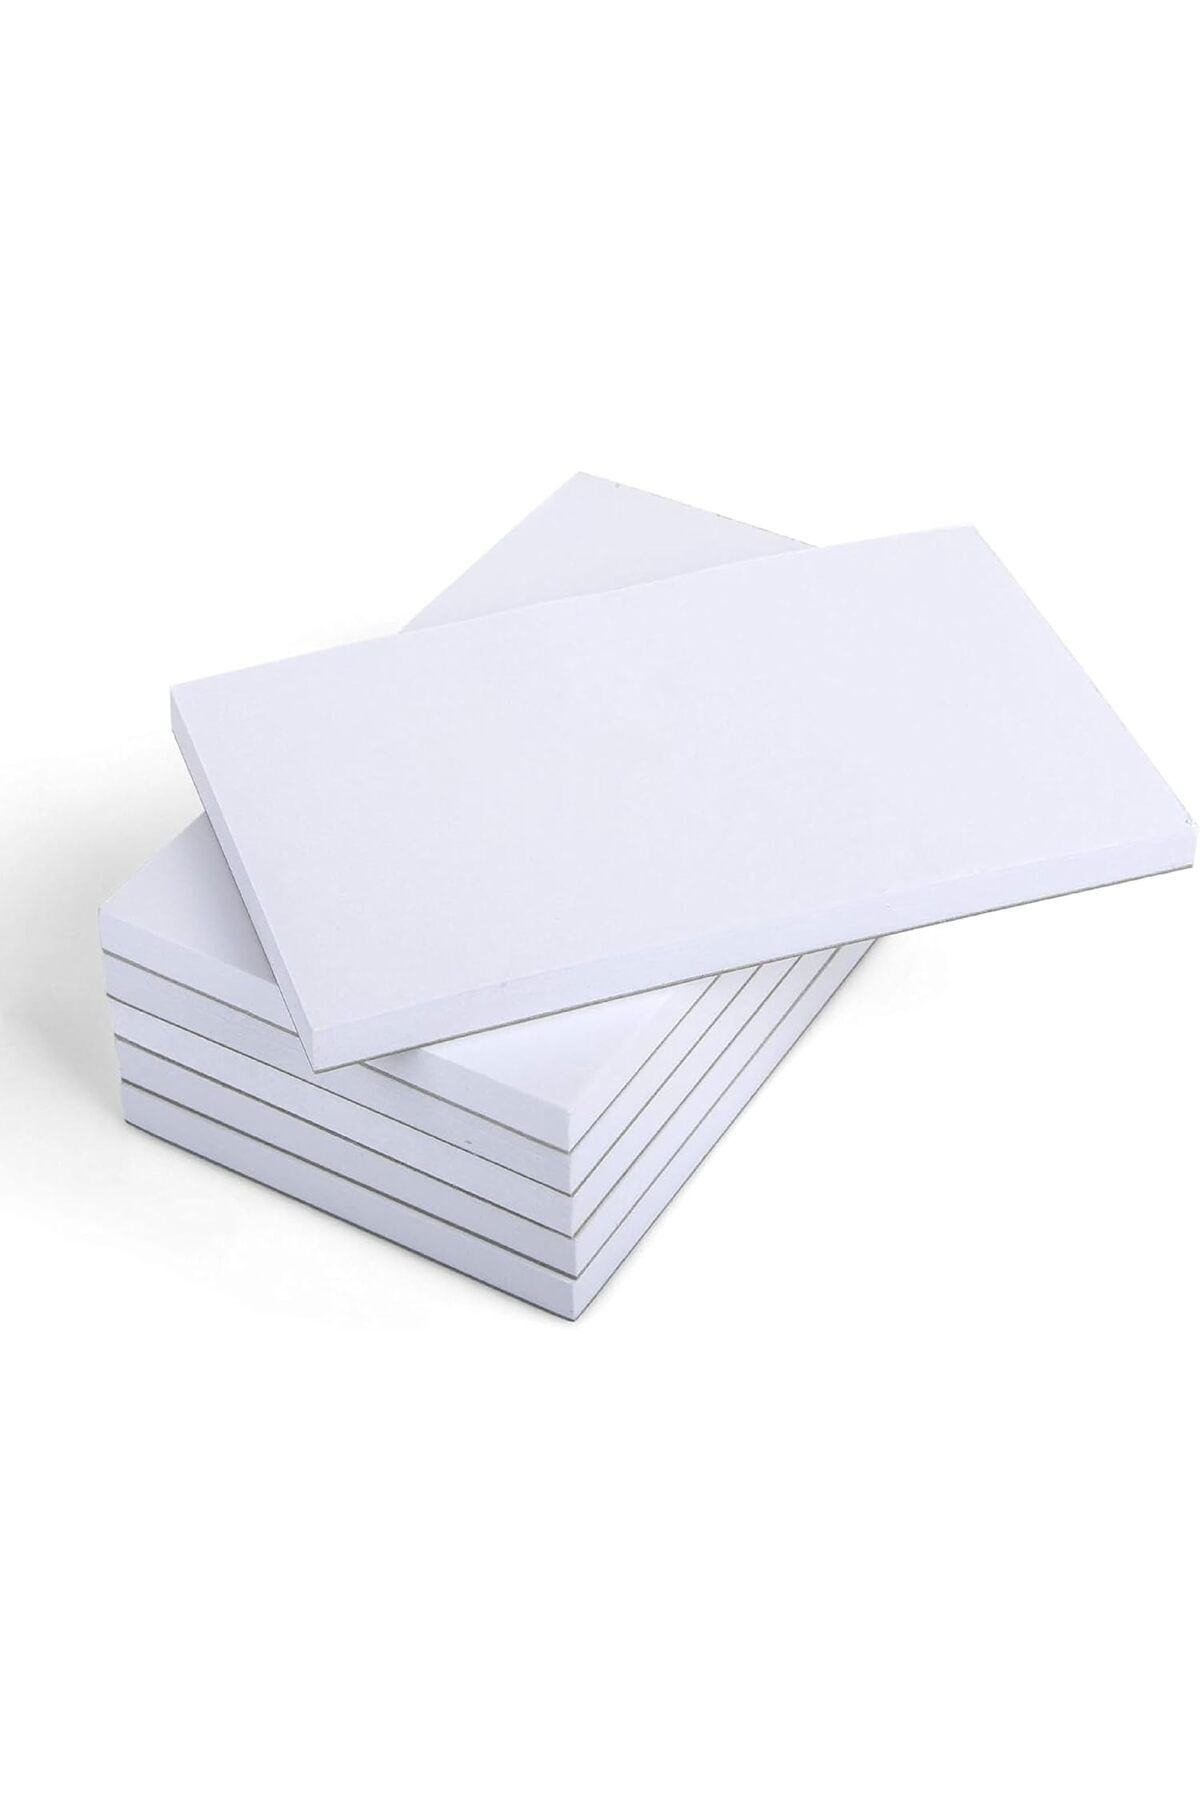 Reversell Tutkallı Not Kağıdı 50'lik 5'li Paket - 10x15cm - Çizgisiz - Beyaz - Tutkal Cilt - Çok Amaçlı